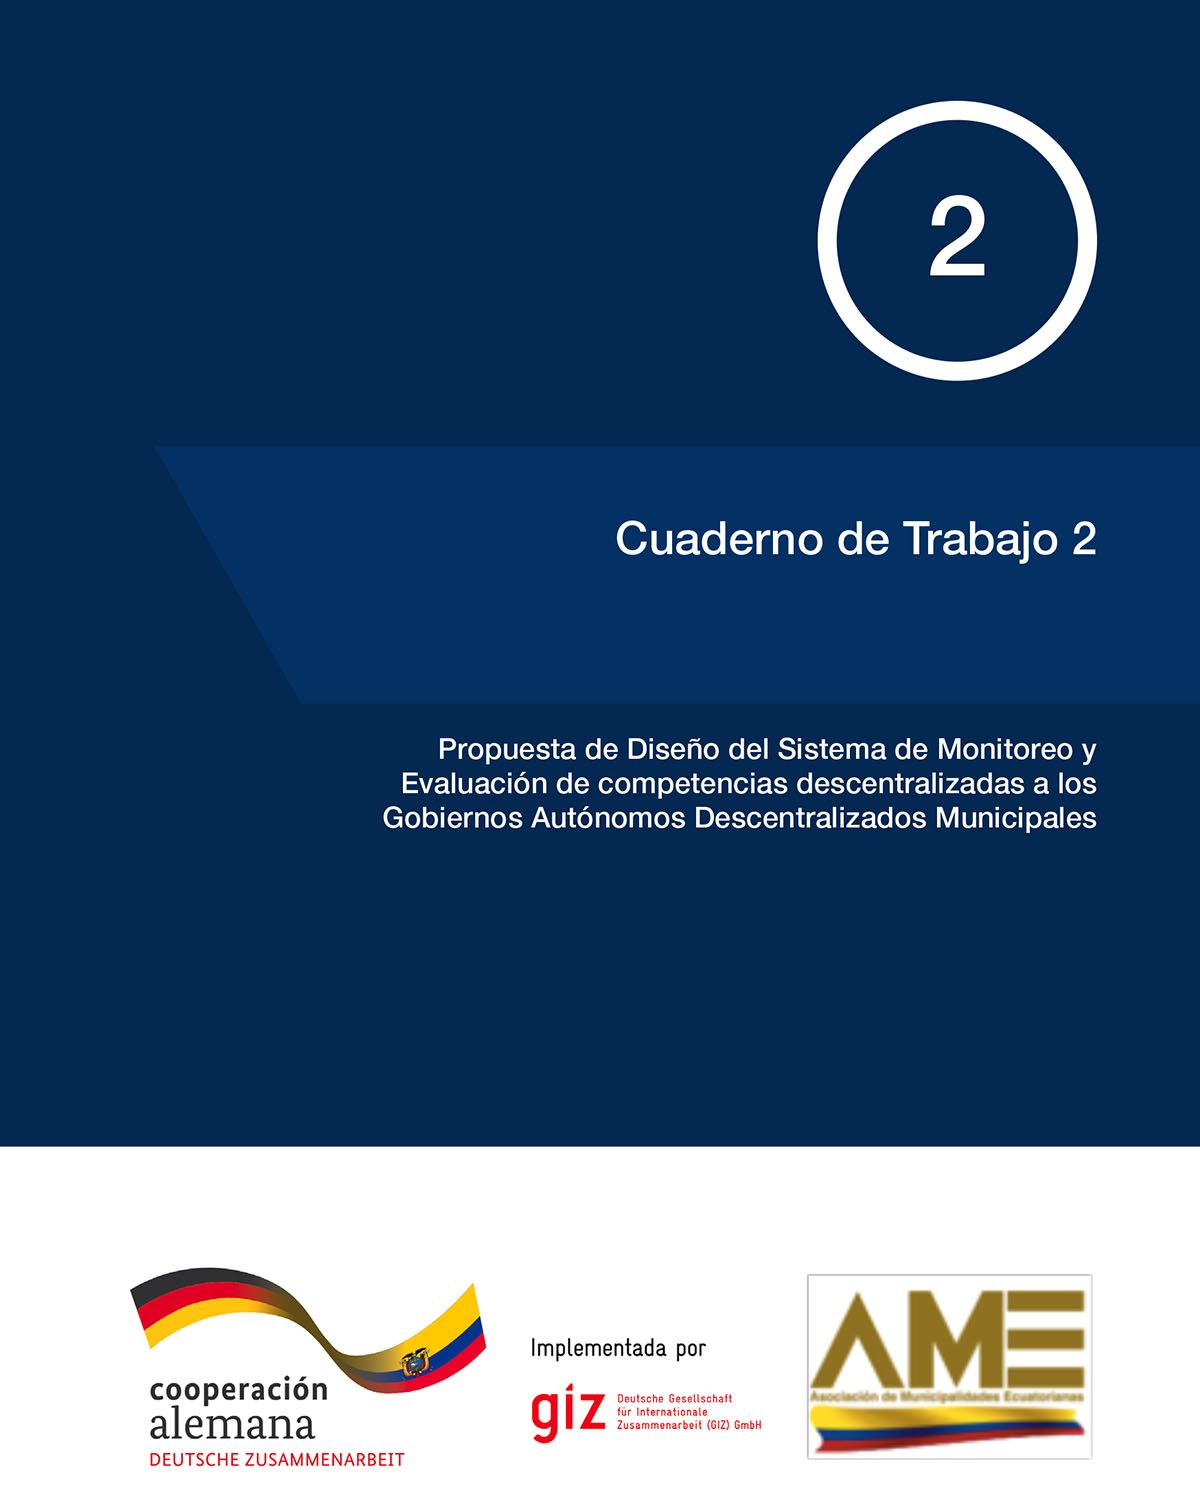 Propuesta de diseño del Sistema de Monitoreo y Evaluación de competencias descentralizadas a los Gobiernos Autónomos Descentralizados Municipales<br/>Quito: Gesellschaft für Internationale Zusammenarbeit (GIZ). 2017. 44 páginas 